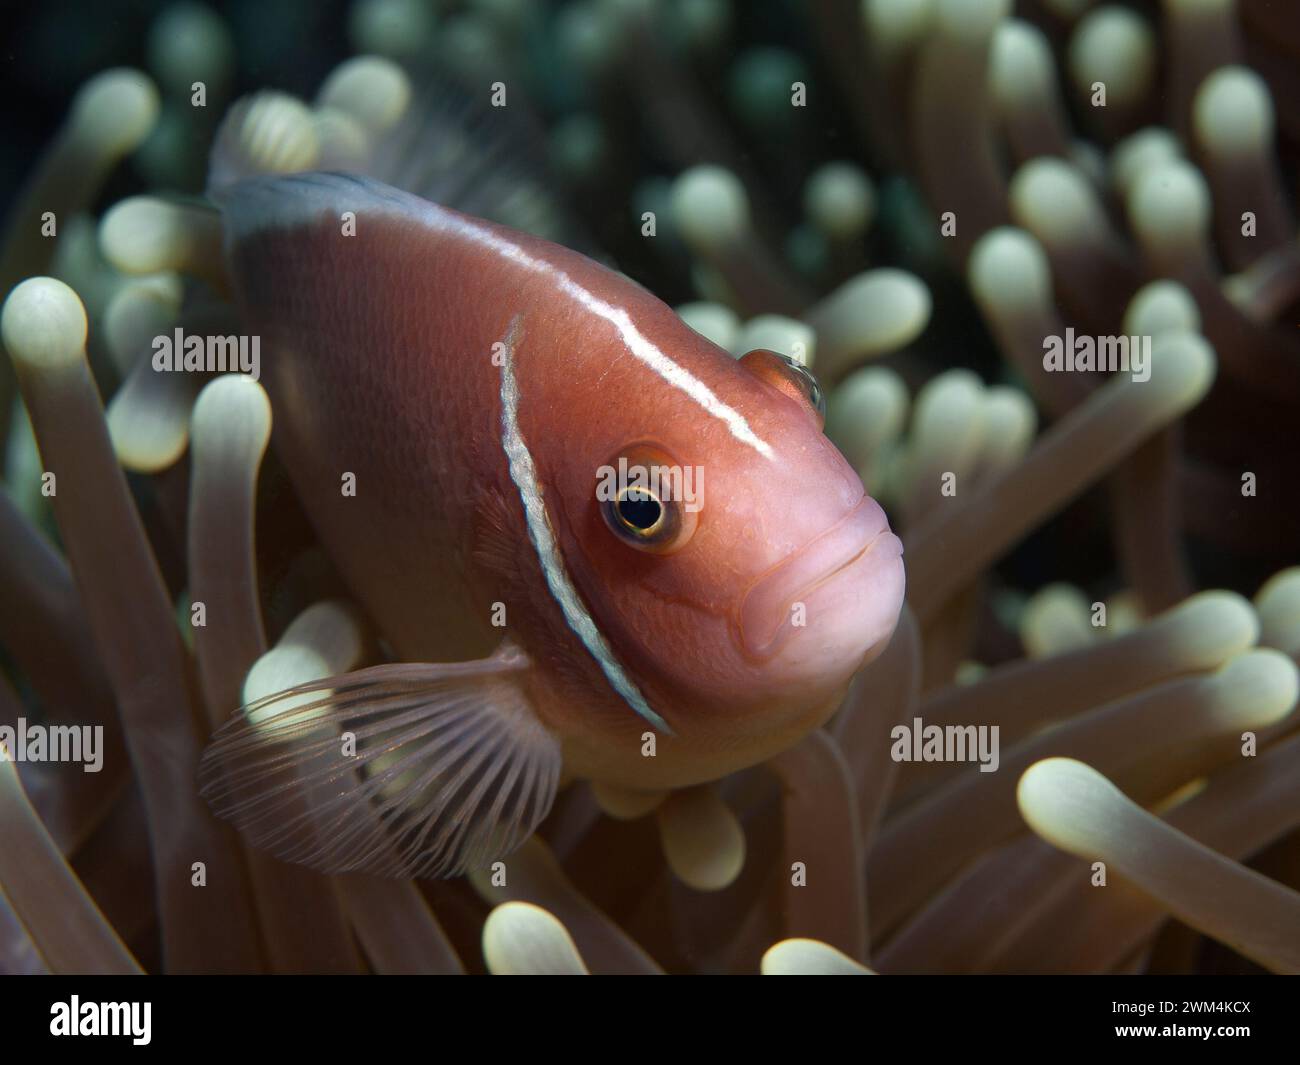 Anemonefish, sempre in movimento: Il pesce pagliaccio sembra curiosamente fuori dal suo anemone. Fotografia subacquea: Barriera corallina, Moalboal, isola di Cebu, Filippine Foto Stock